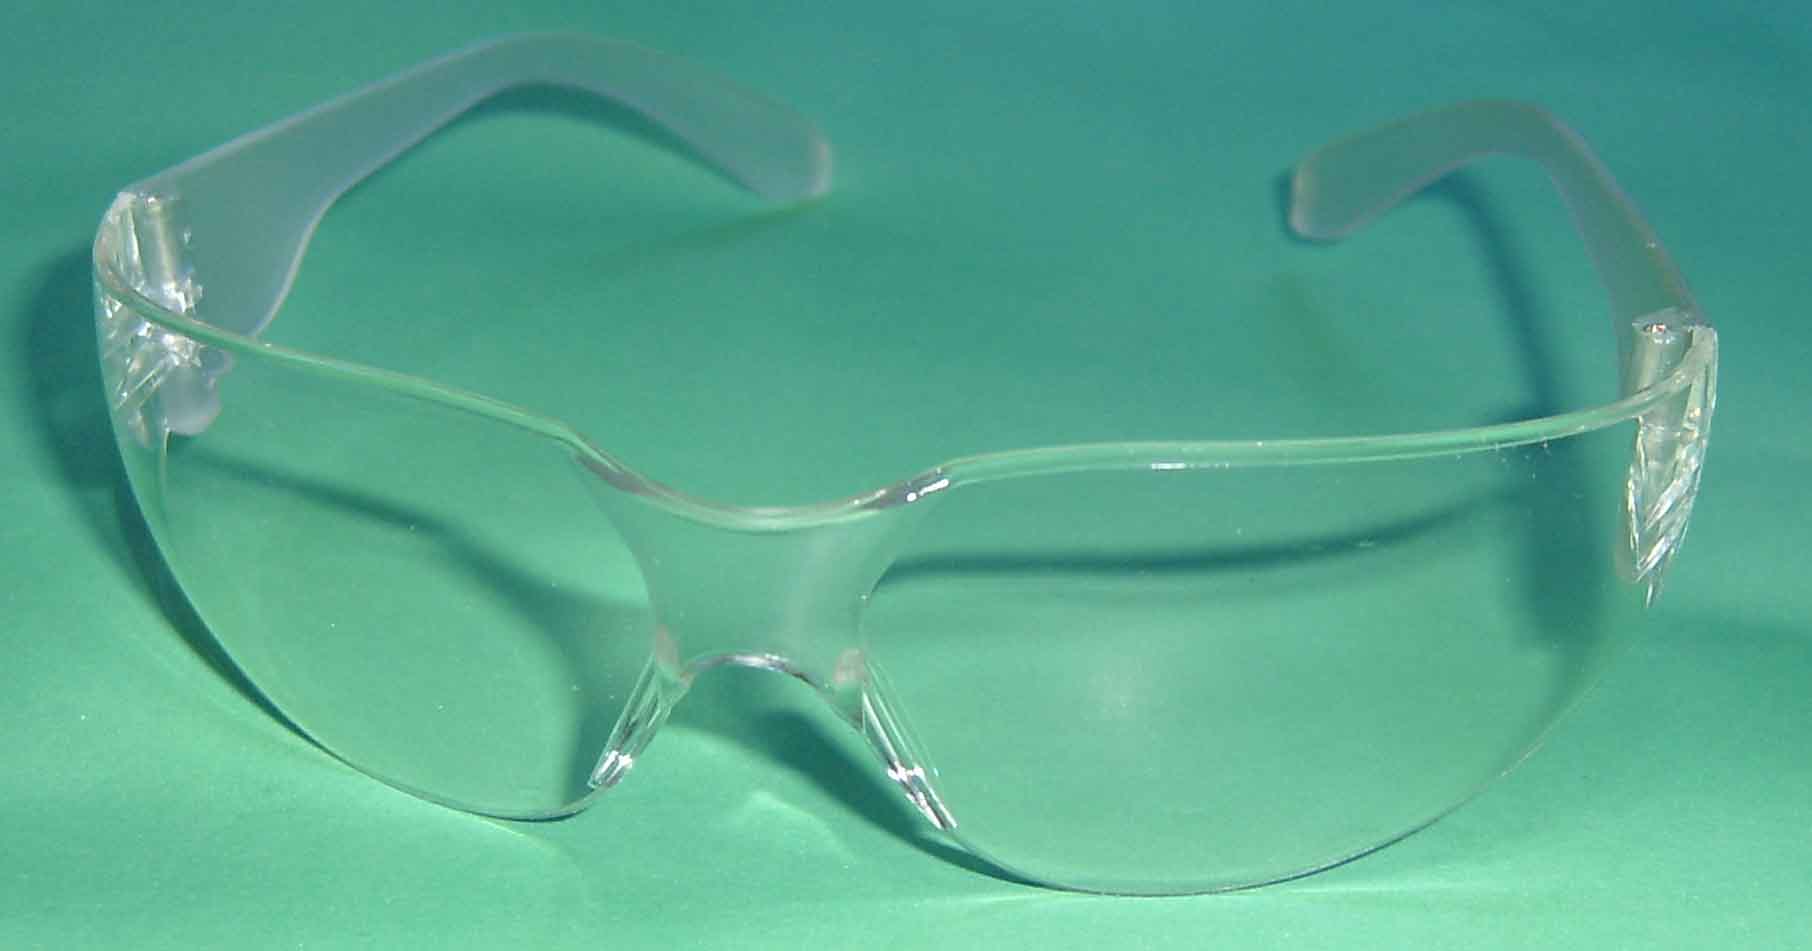 В помещении лучше надеть всем защитные очки